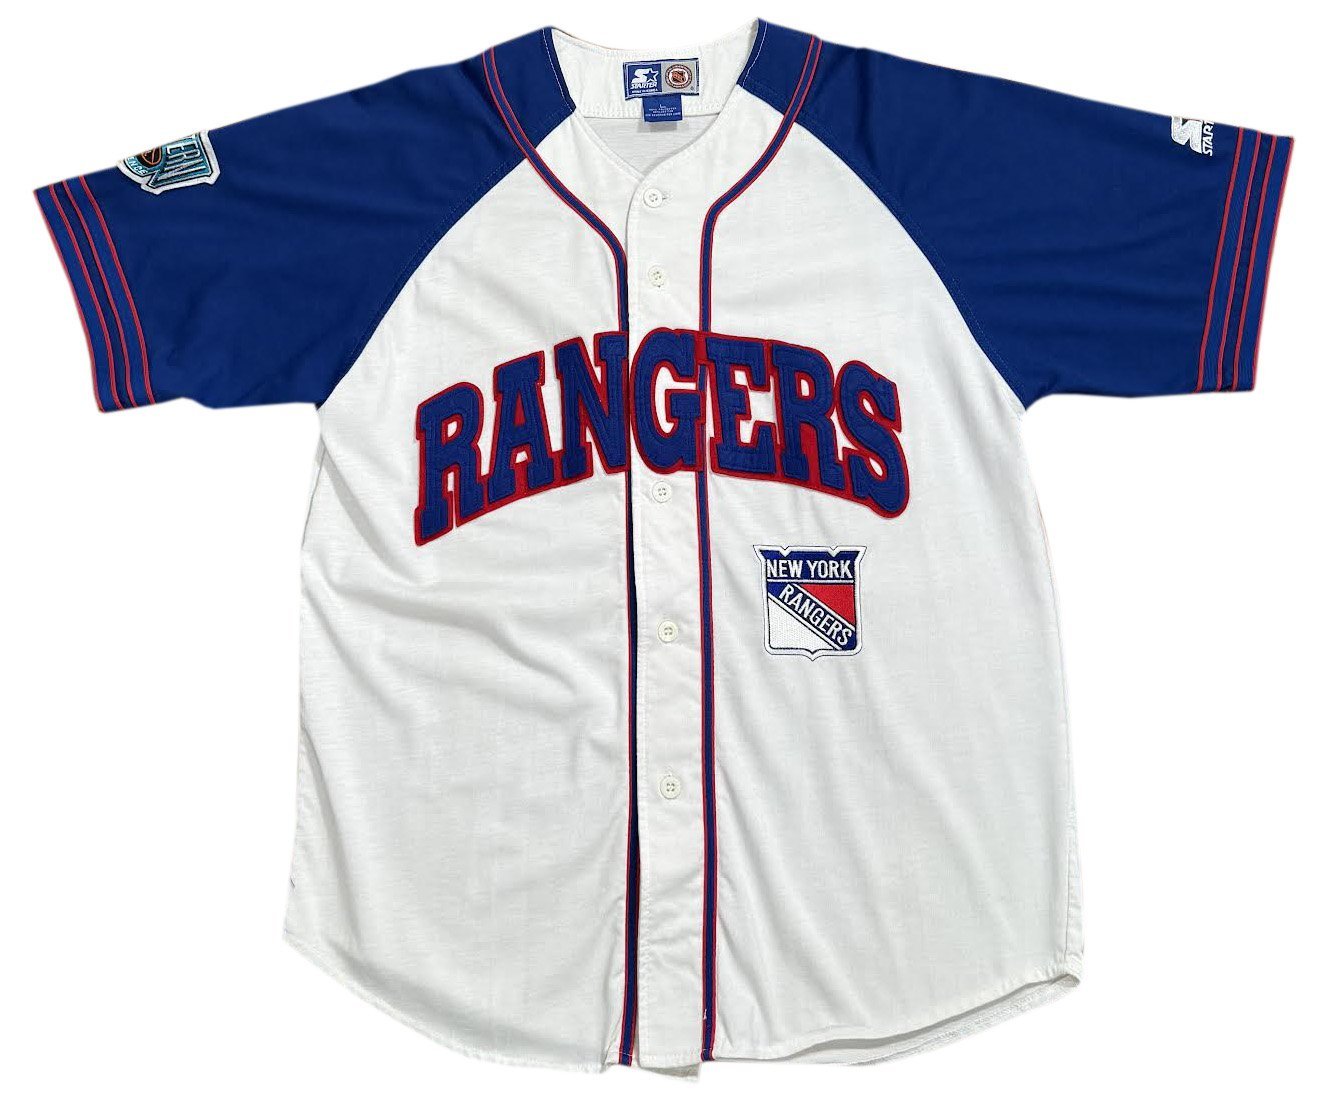 90s+Starter+Rangers+jersey+.jpg